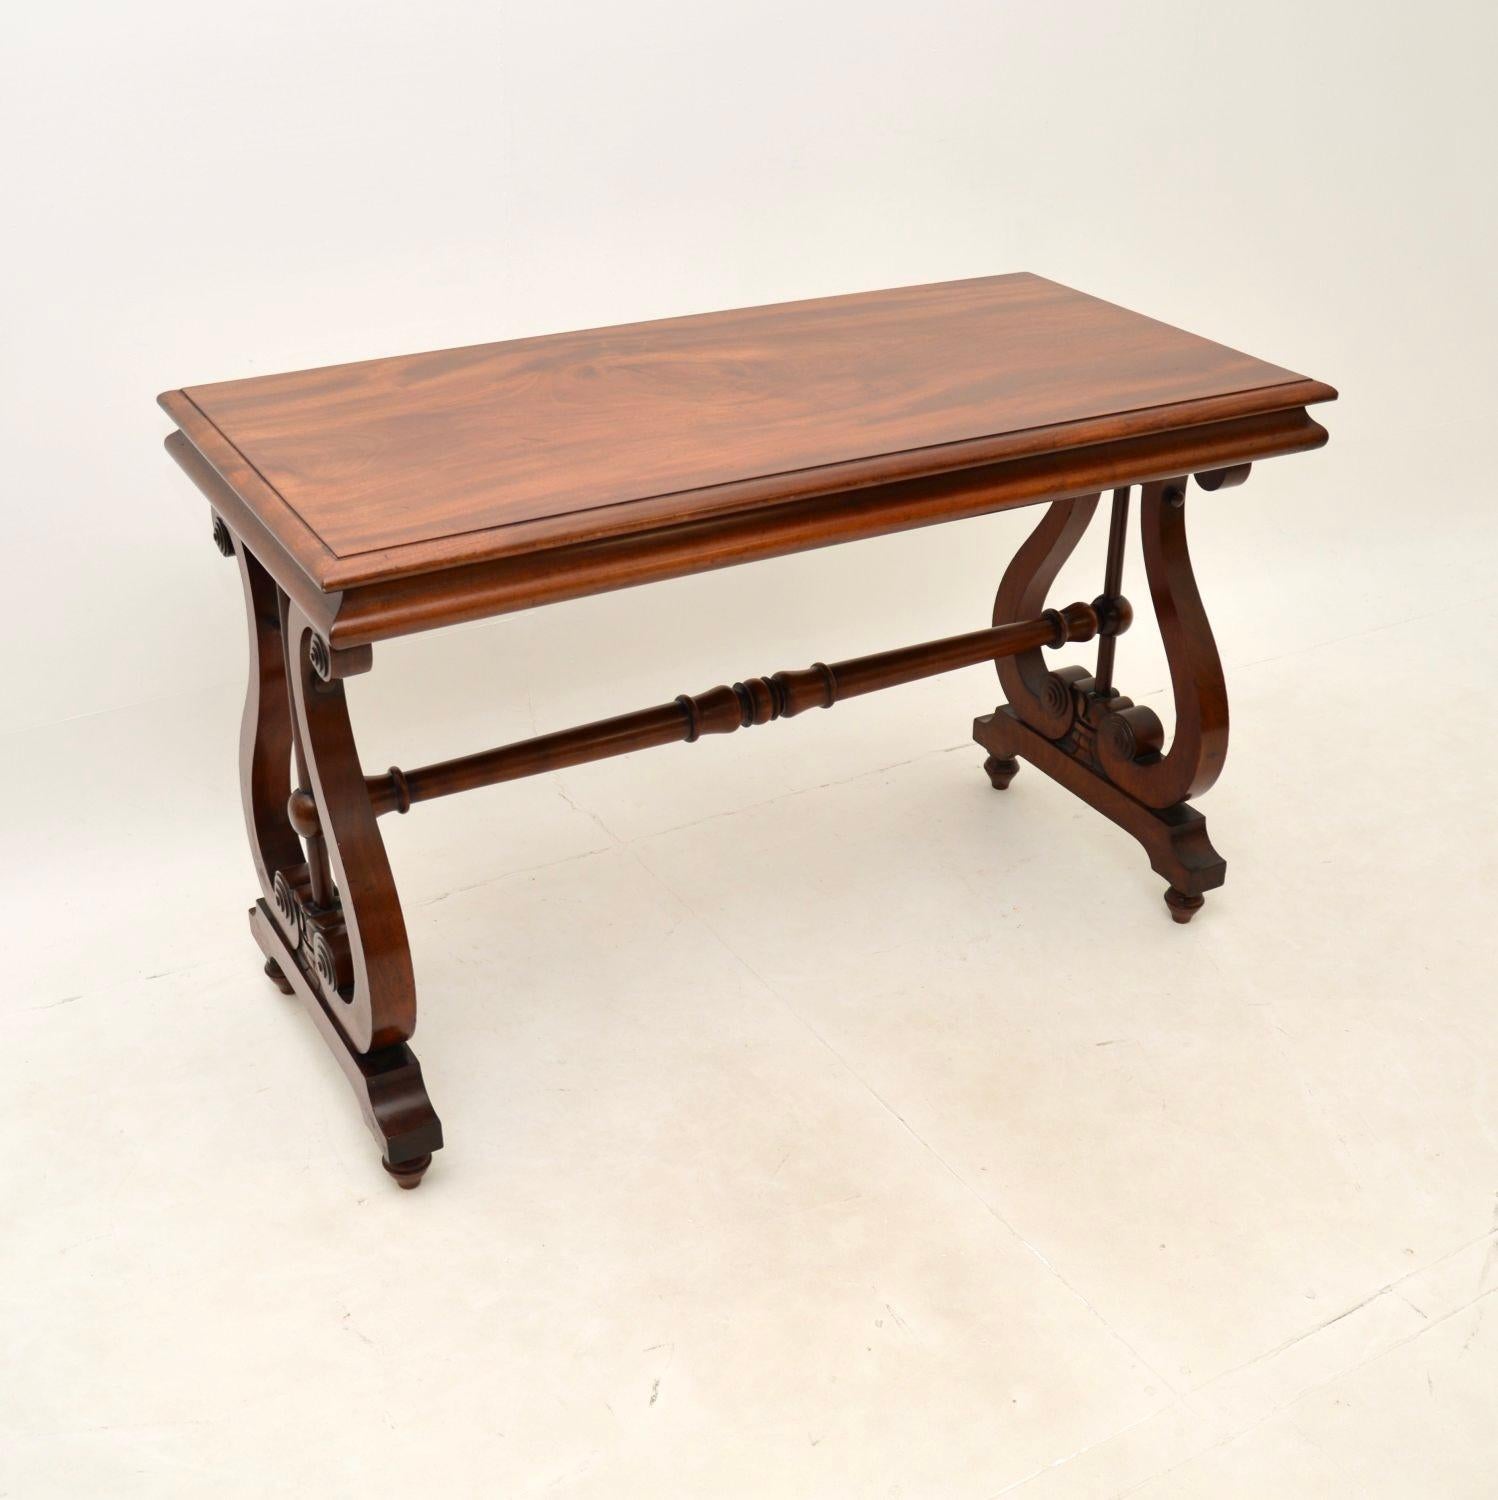 Une fantastique table de bibliothèque / bureau Regency antique. Fabriqué en Angleterre, il date de la période 1820-1840.

Il est d'une très grande qualité et d'une taille très utile. Le plateau rectangulaire a des bords joliment moulés, il repose